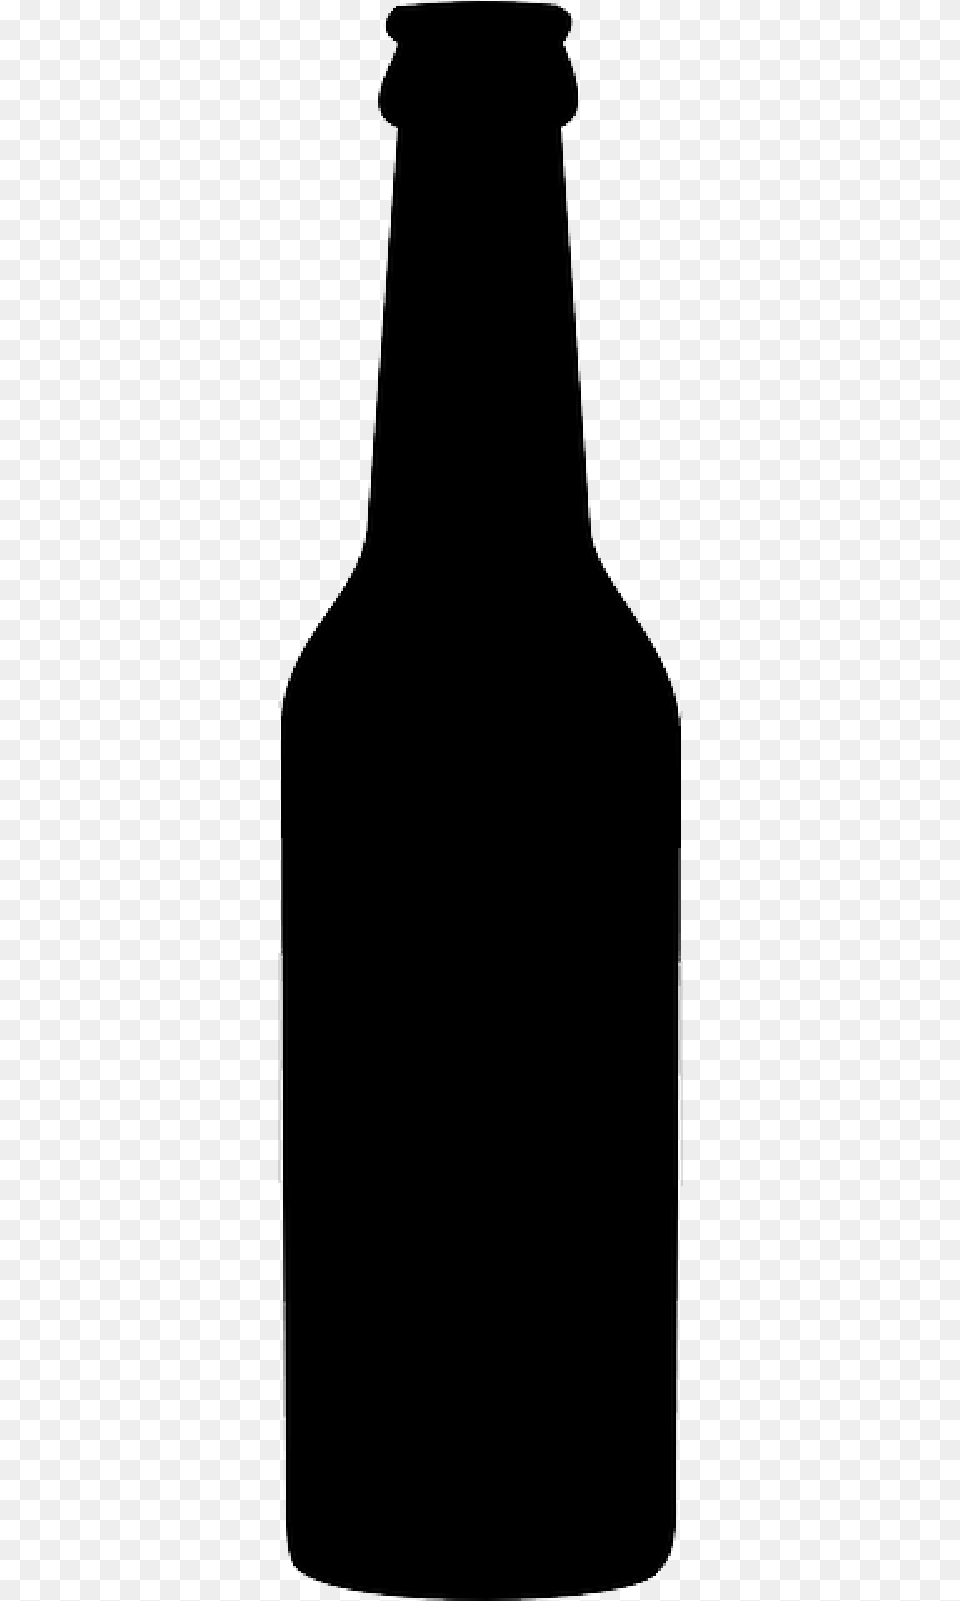 Beer Bottle Beverage Can Beer Glasses Beer Bottle Vector Outline, Alcohol, Beer Bottle, Liquor Free Png Download